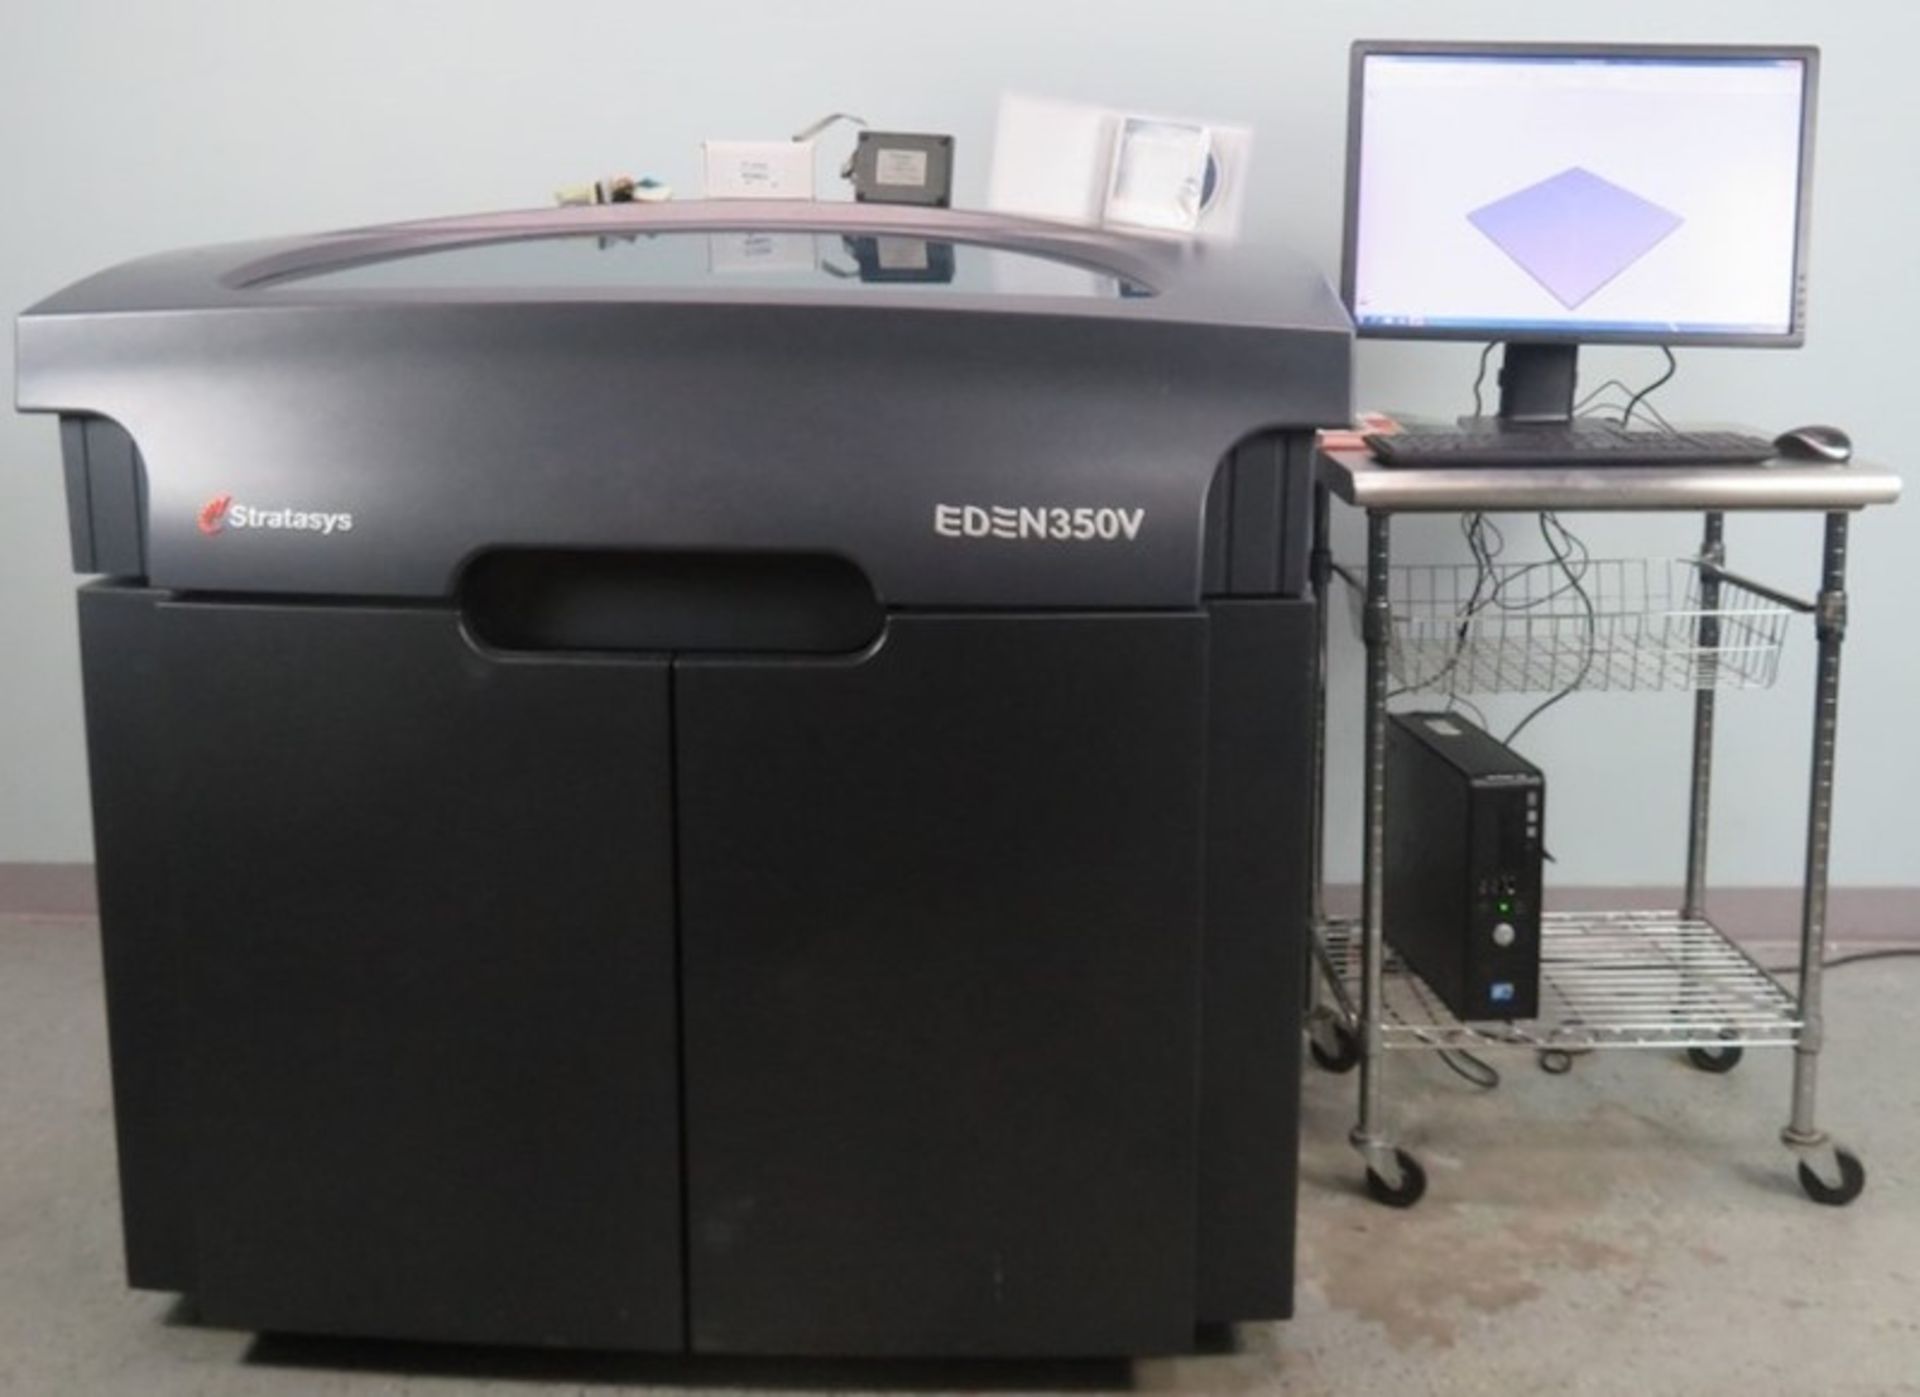 Stratsys Eden 350V 3D Printer, New in 2014